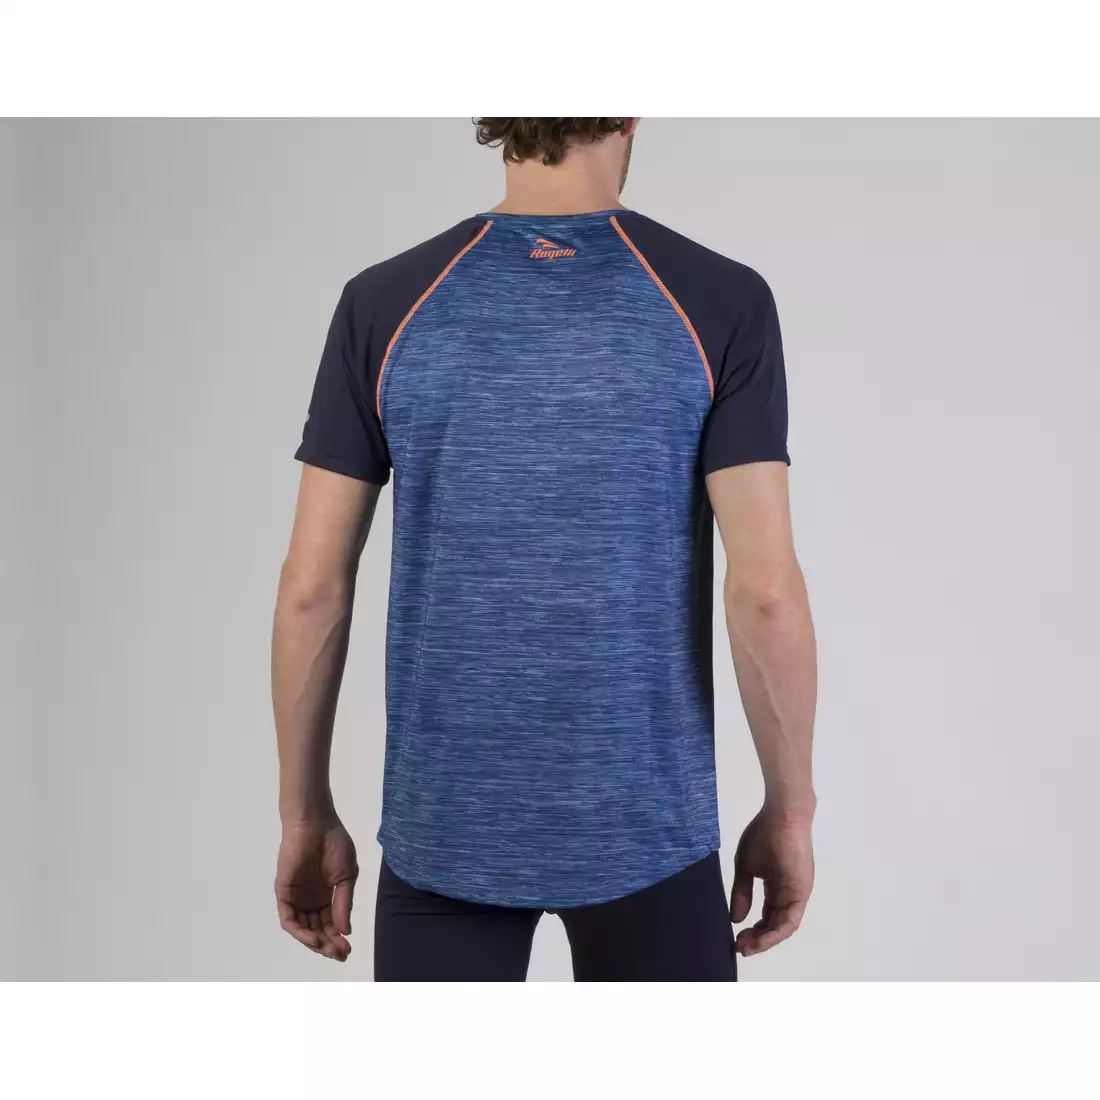 ROGELLI RUN STRUCTURE 830.240 - męska koszulka K/R do biegania, niebiesko-pomarańczowa